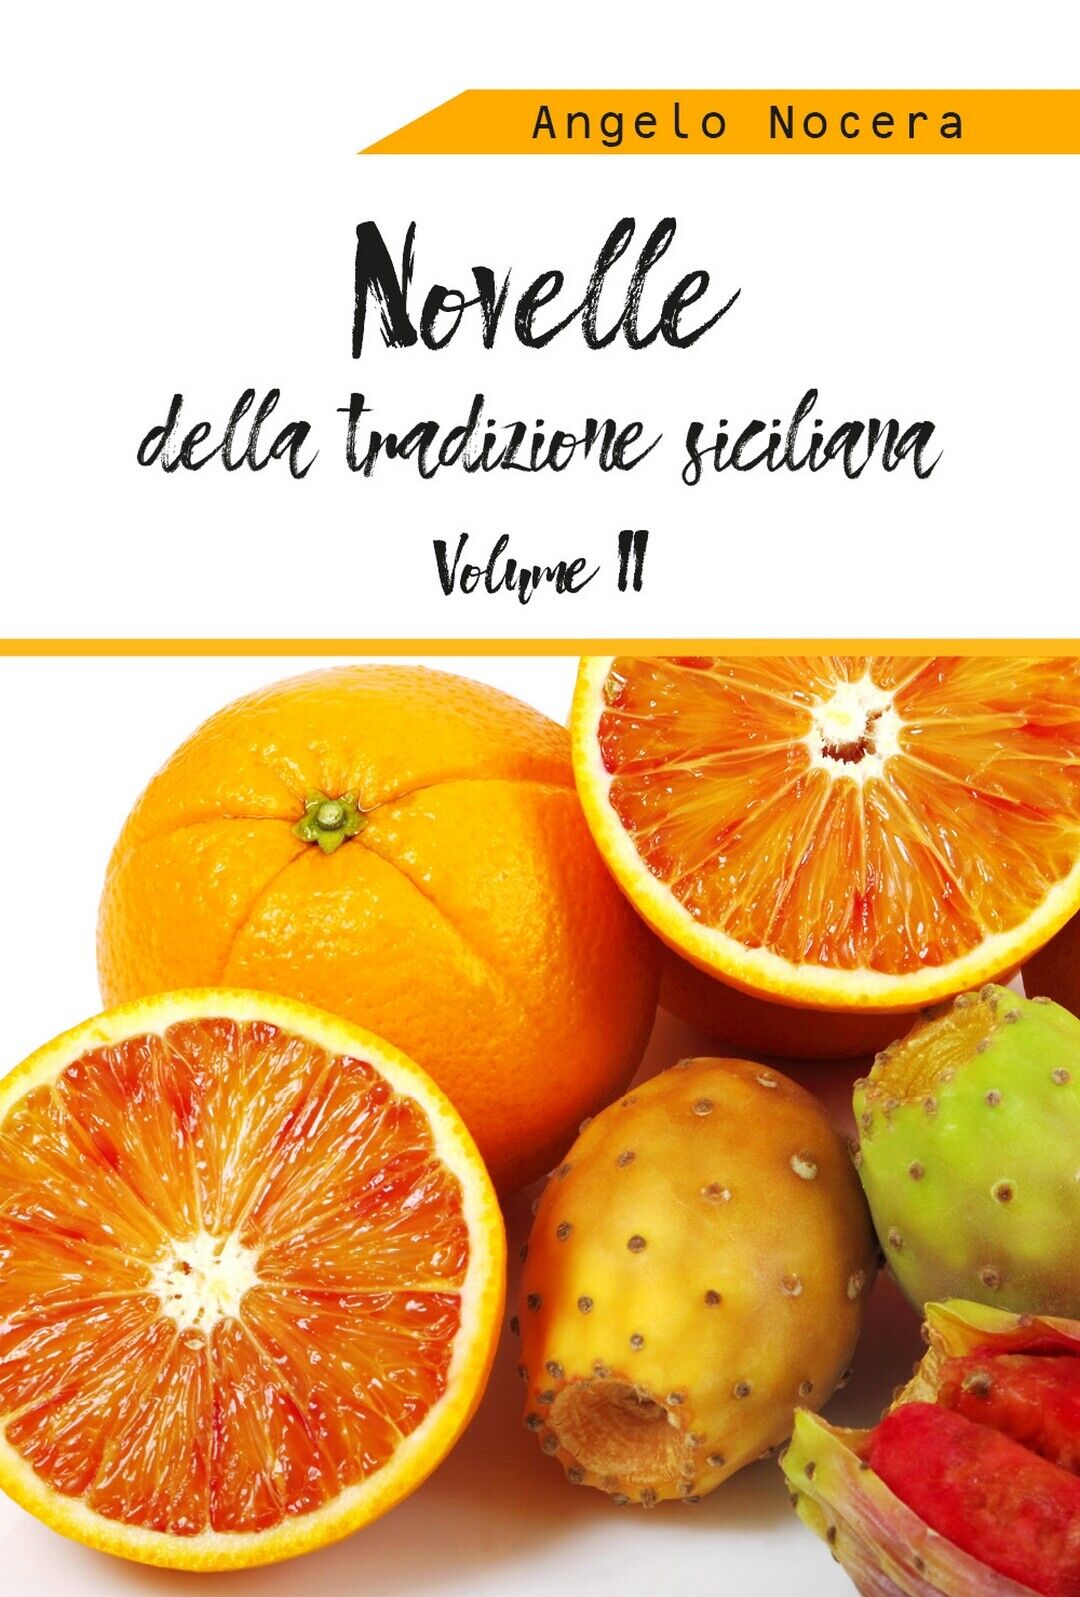 Novelle della tradizione siciliana. II volume, Angelo Nocera,  2019,  Youcanprin